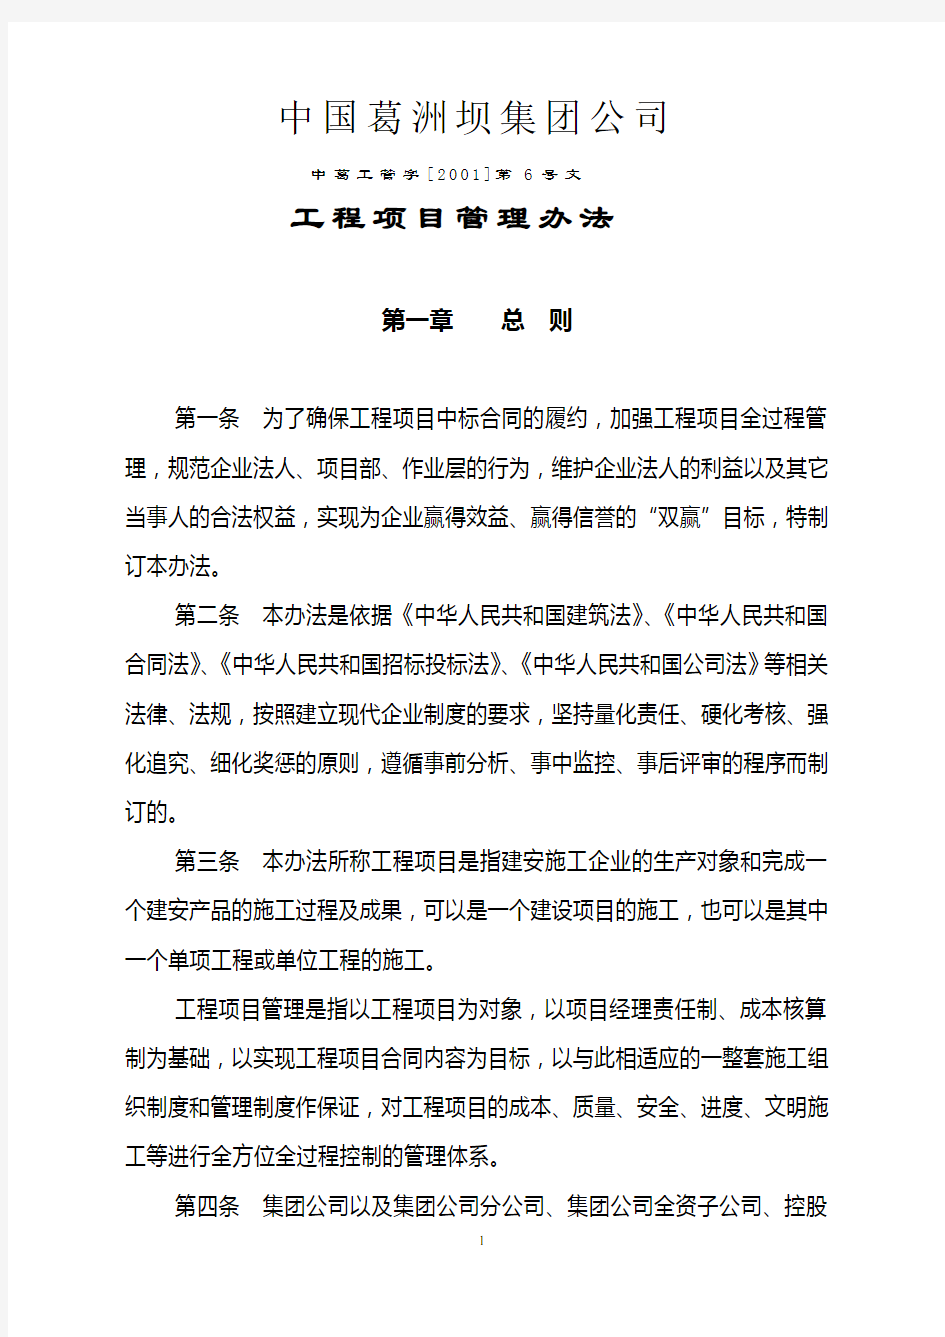 中国葛洲坝集团公司工程项目管理办法(正式发稿)